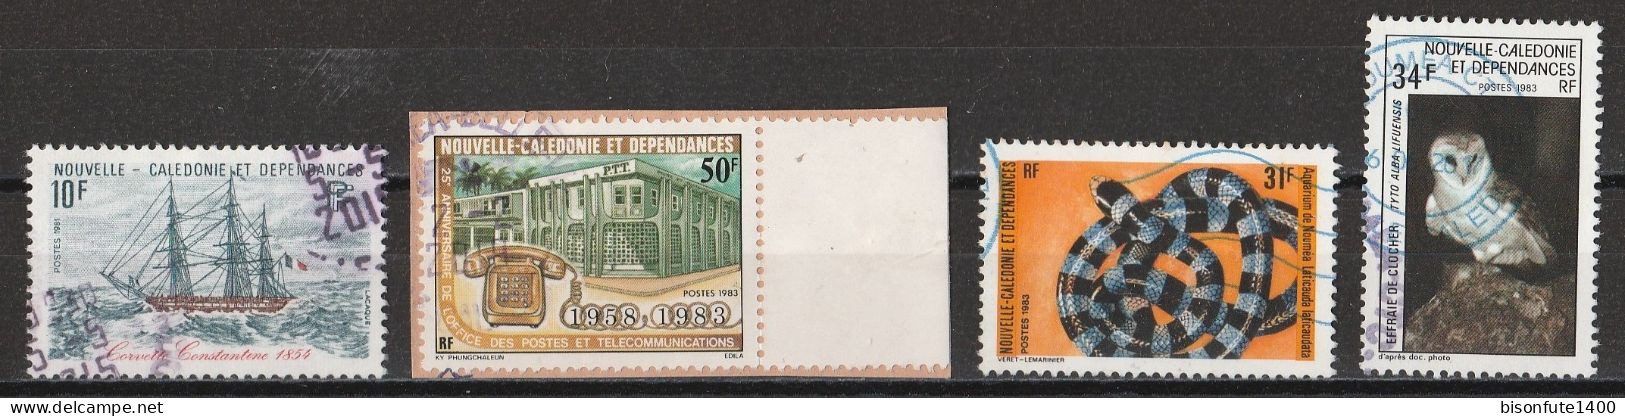 Nouvelle-Calédonie 1981 à 1989 : Timbres Yvert & Tellier N° 449 - 474 - 475 - 479 - 503 - 522 - 560 Et 574 Oblitérés. - Used Stamps